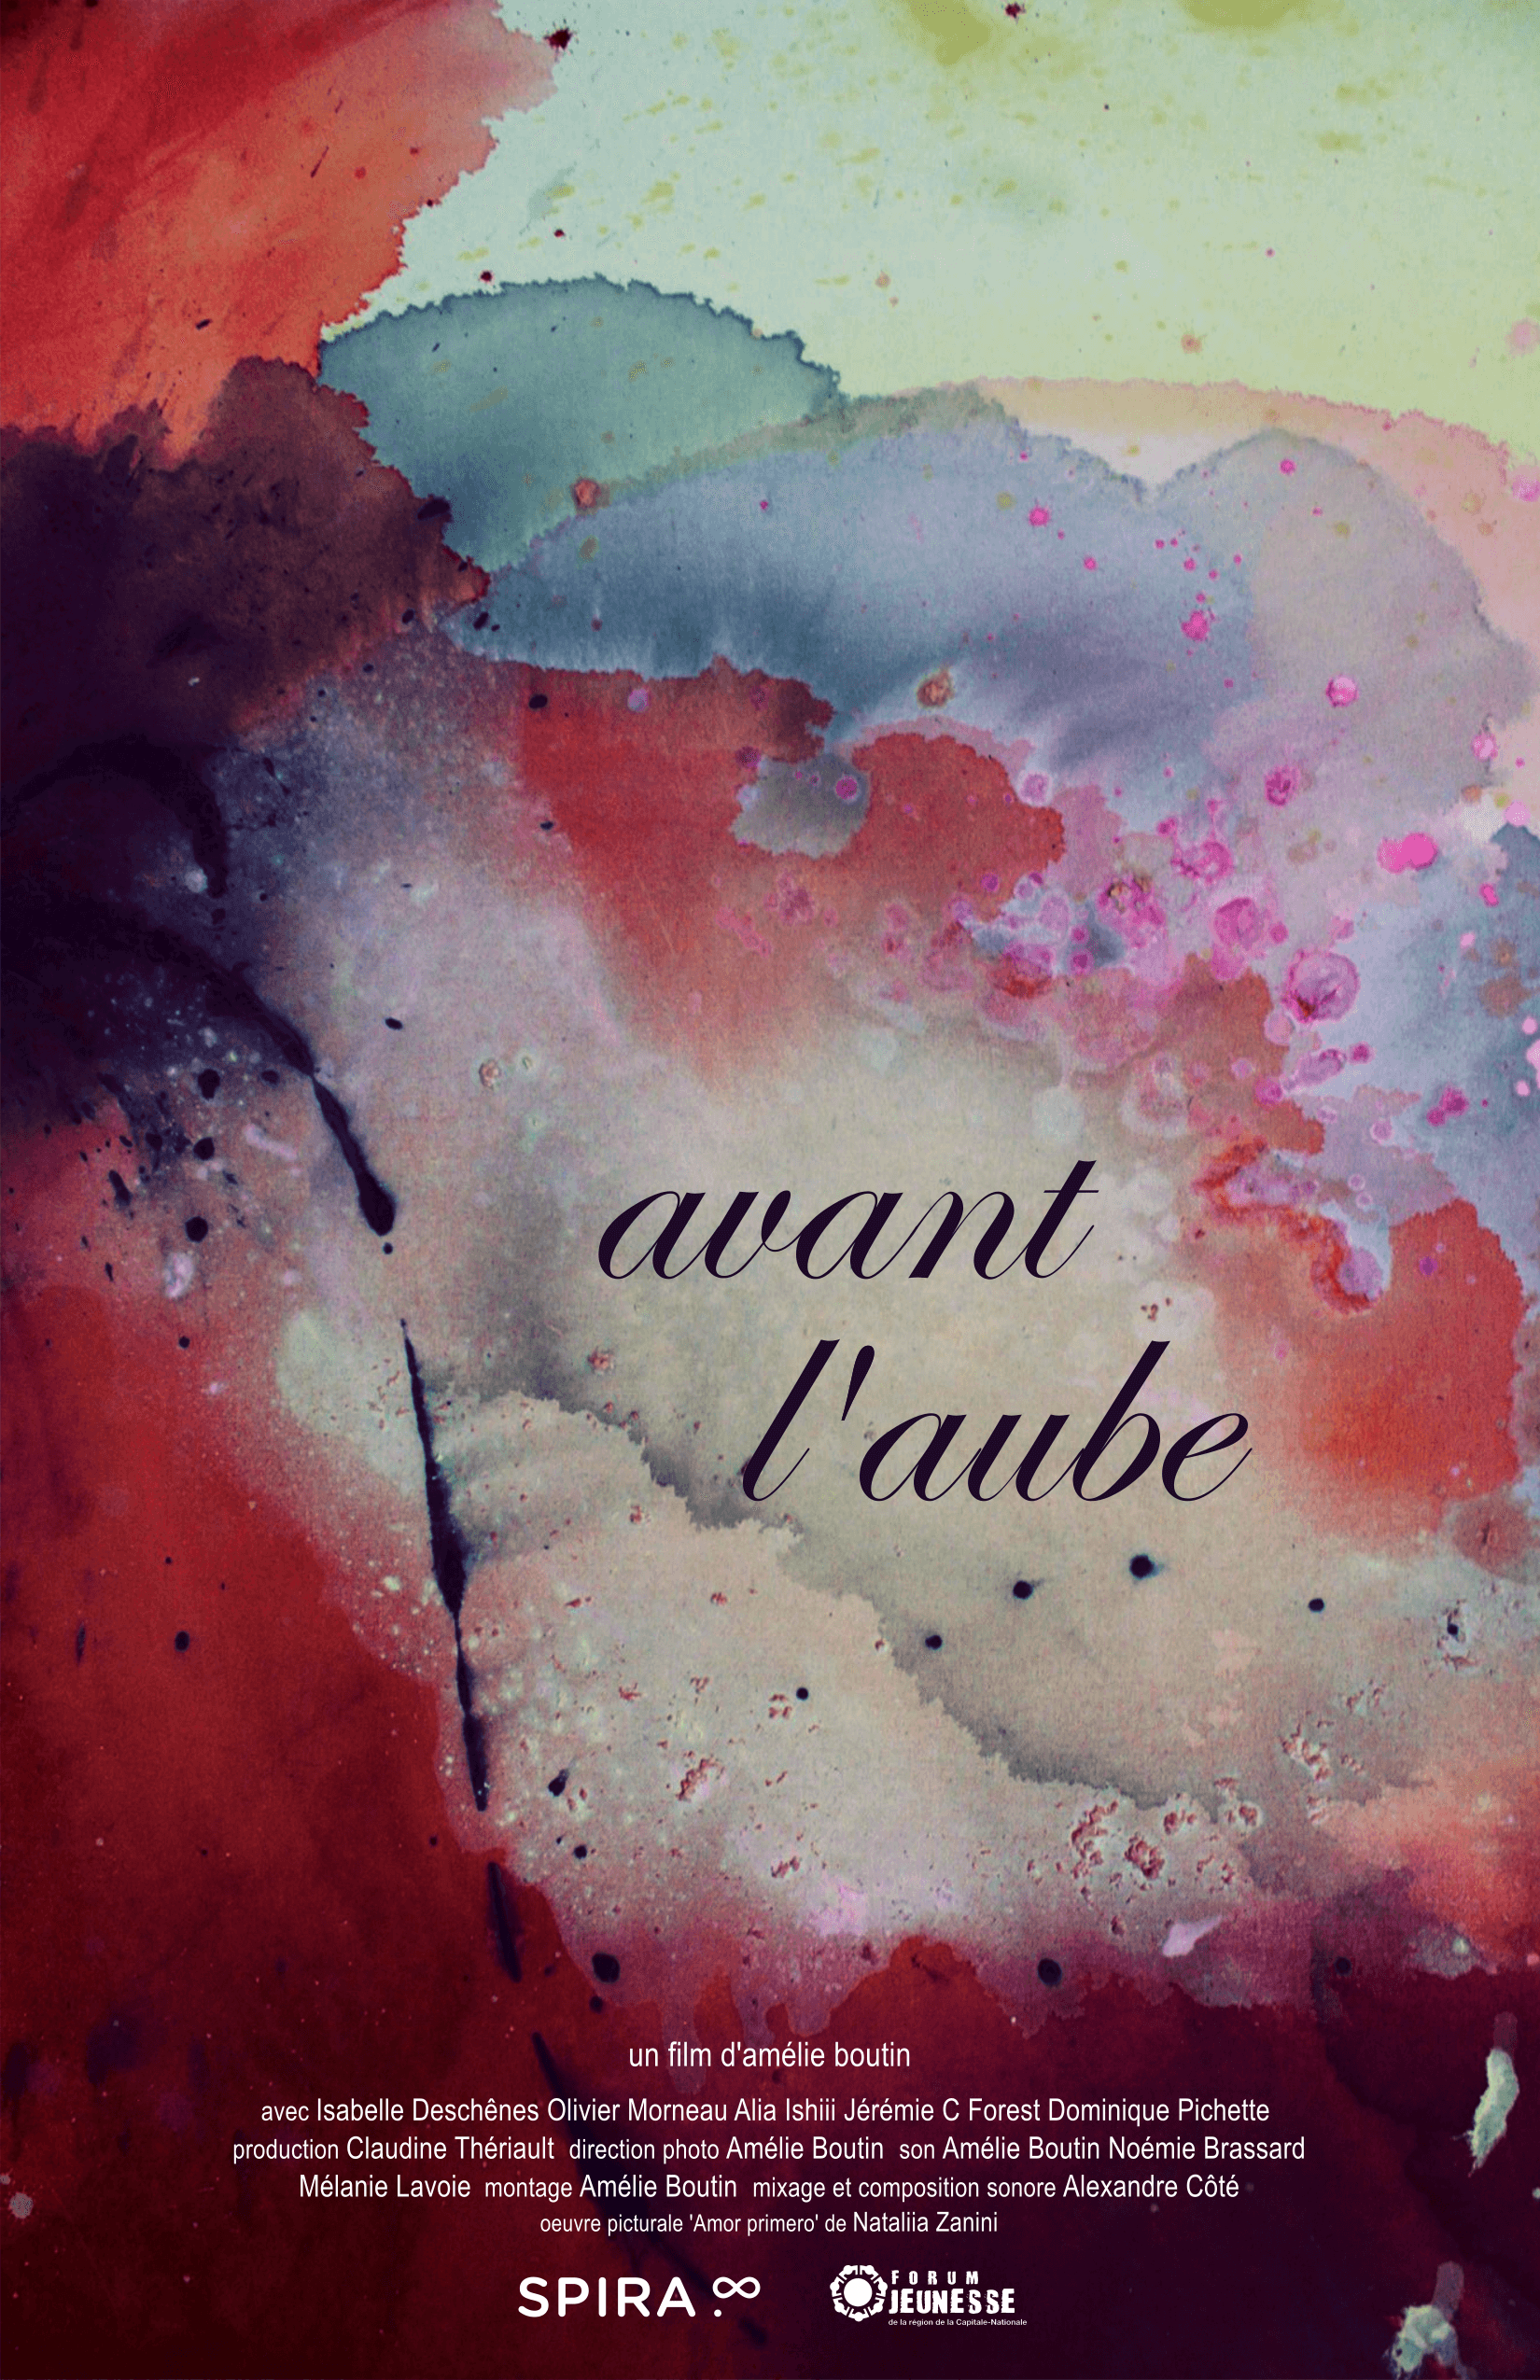 Galerie de photos -  Avant l'aube Amélie Boutin 2016